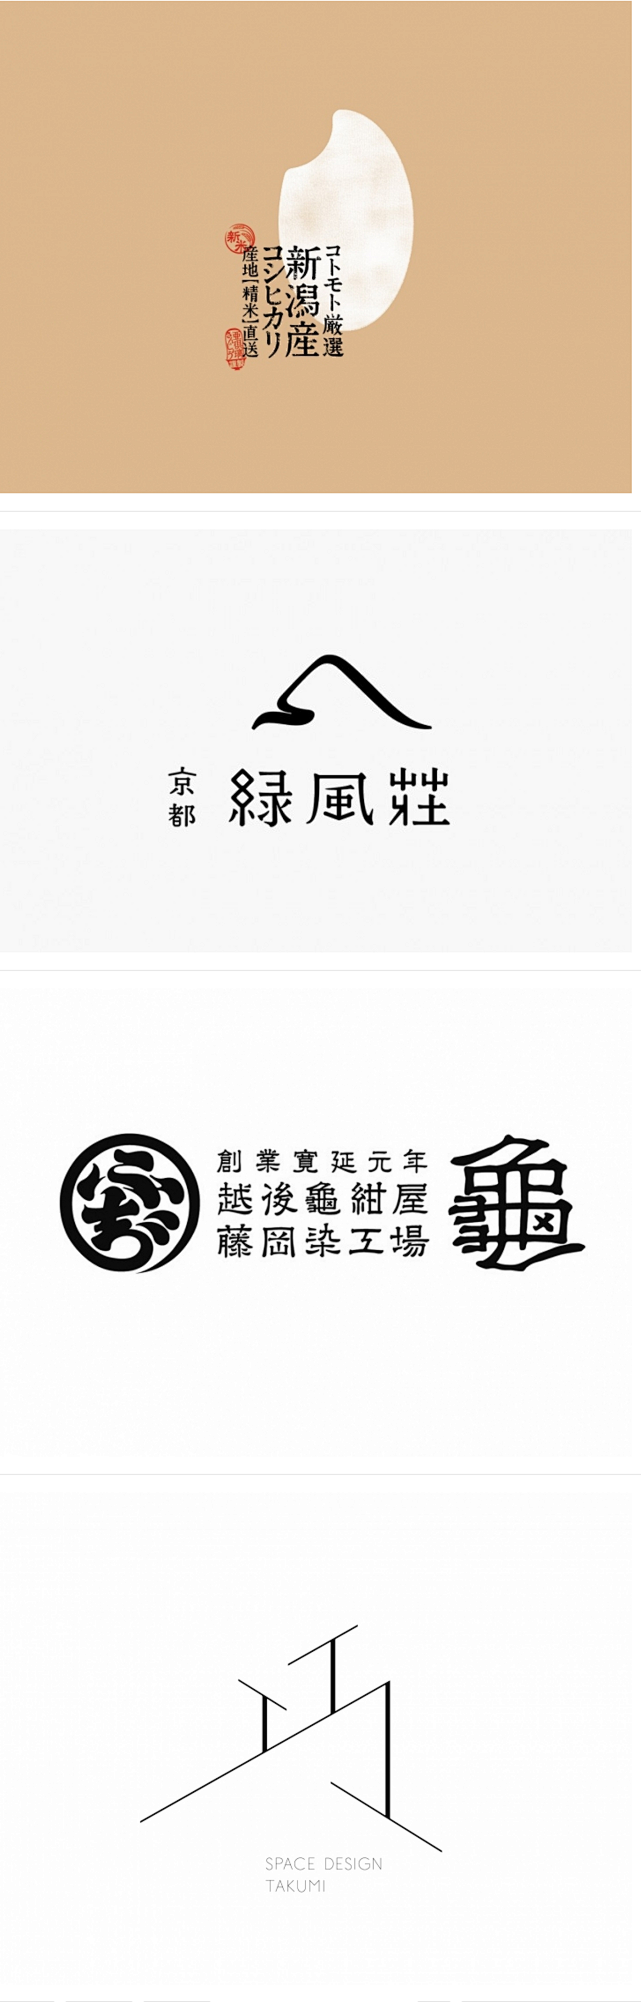 日本的一些标志设计欣赏 设计圈 展示 设...